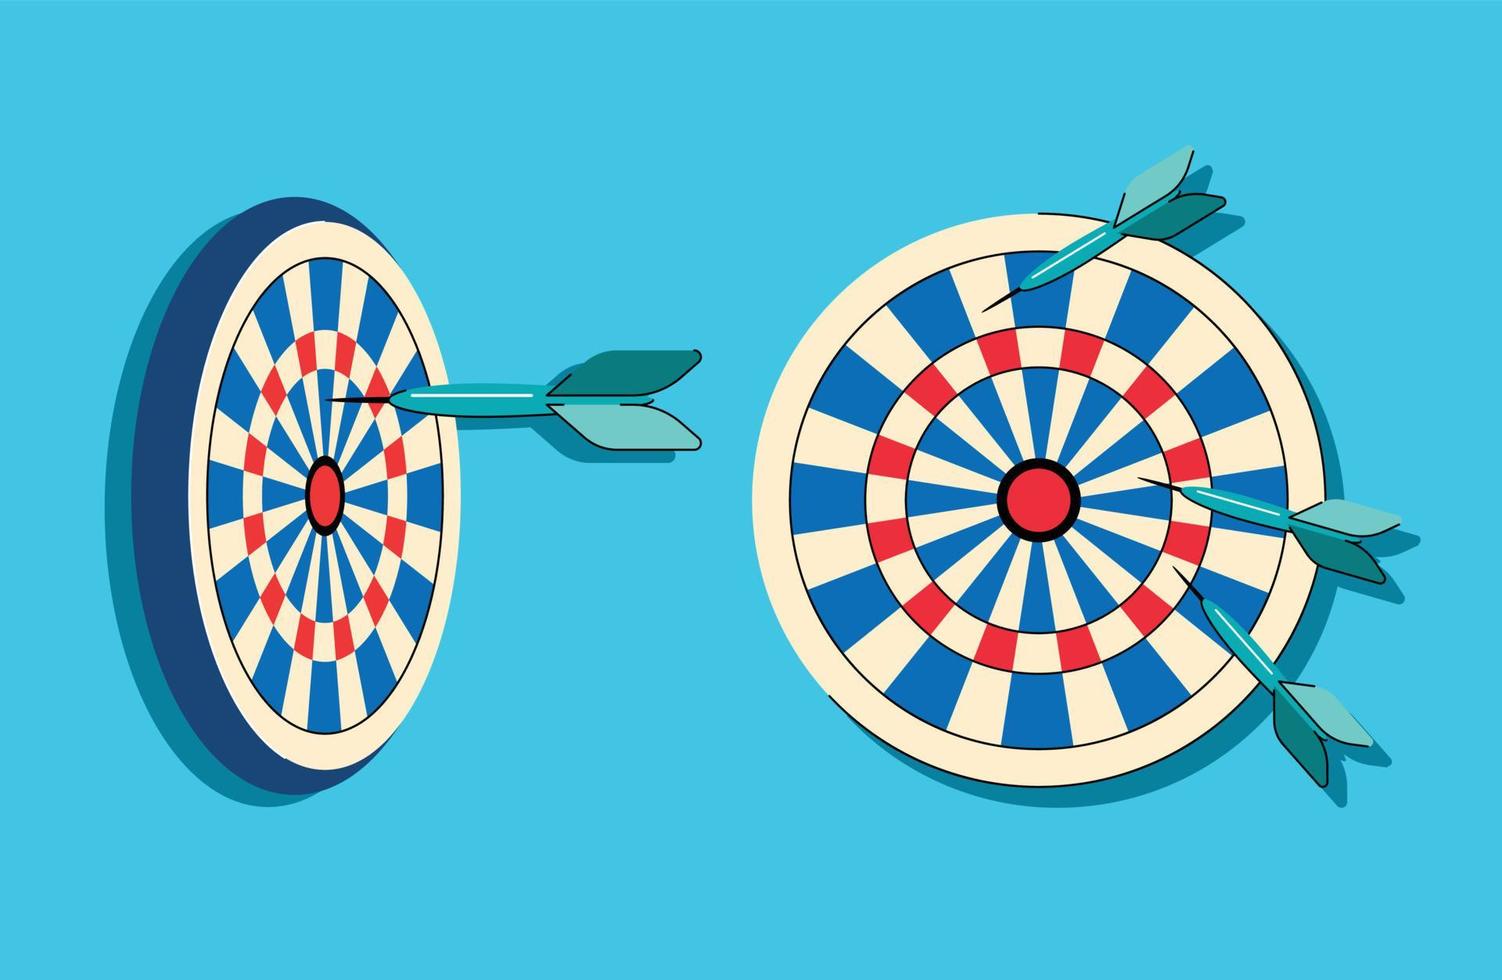 darts and darts board vector illustration